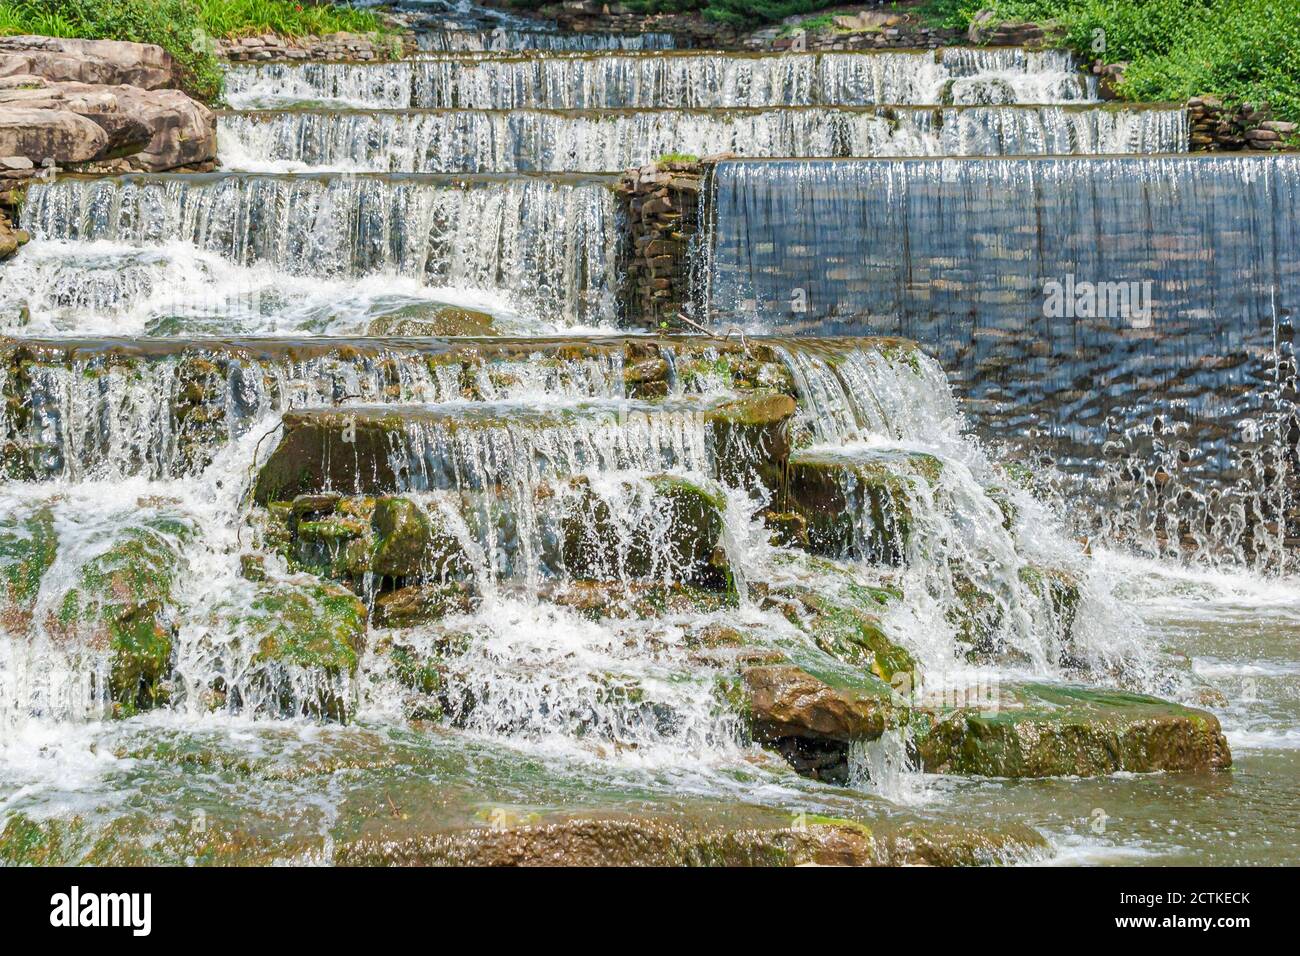 Huntsville Alabama, campo de golf Hampton Cove, cascadas artificiales artificiales artificiales de agua, 081003 T0029 Foto de stock